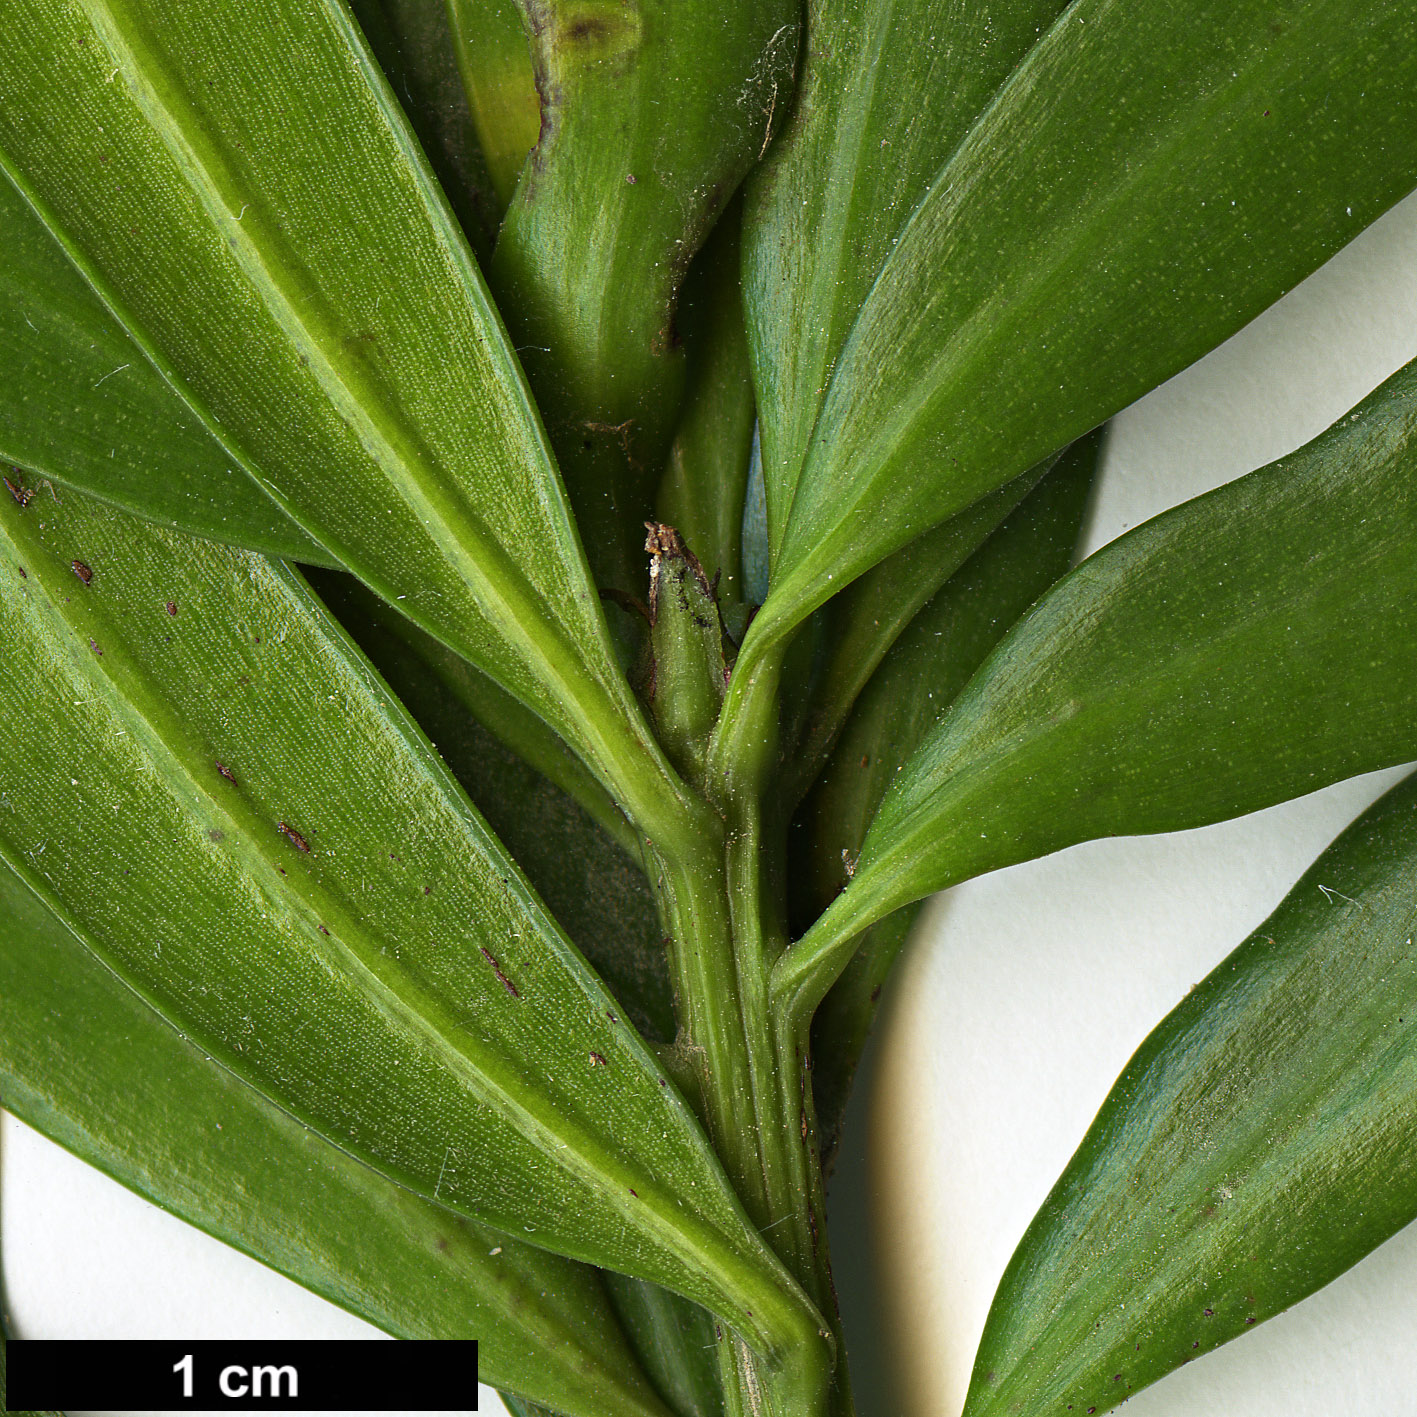 High resolution image: Family: Podocarpaceae - Genus: Podocarpus - Taxon: latifolius